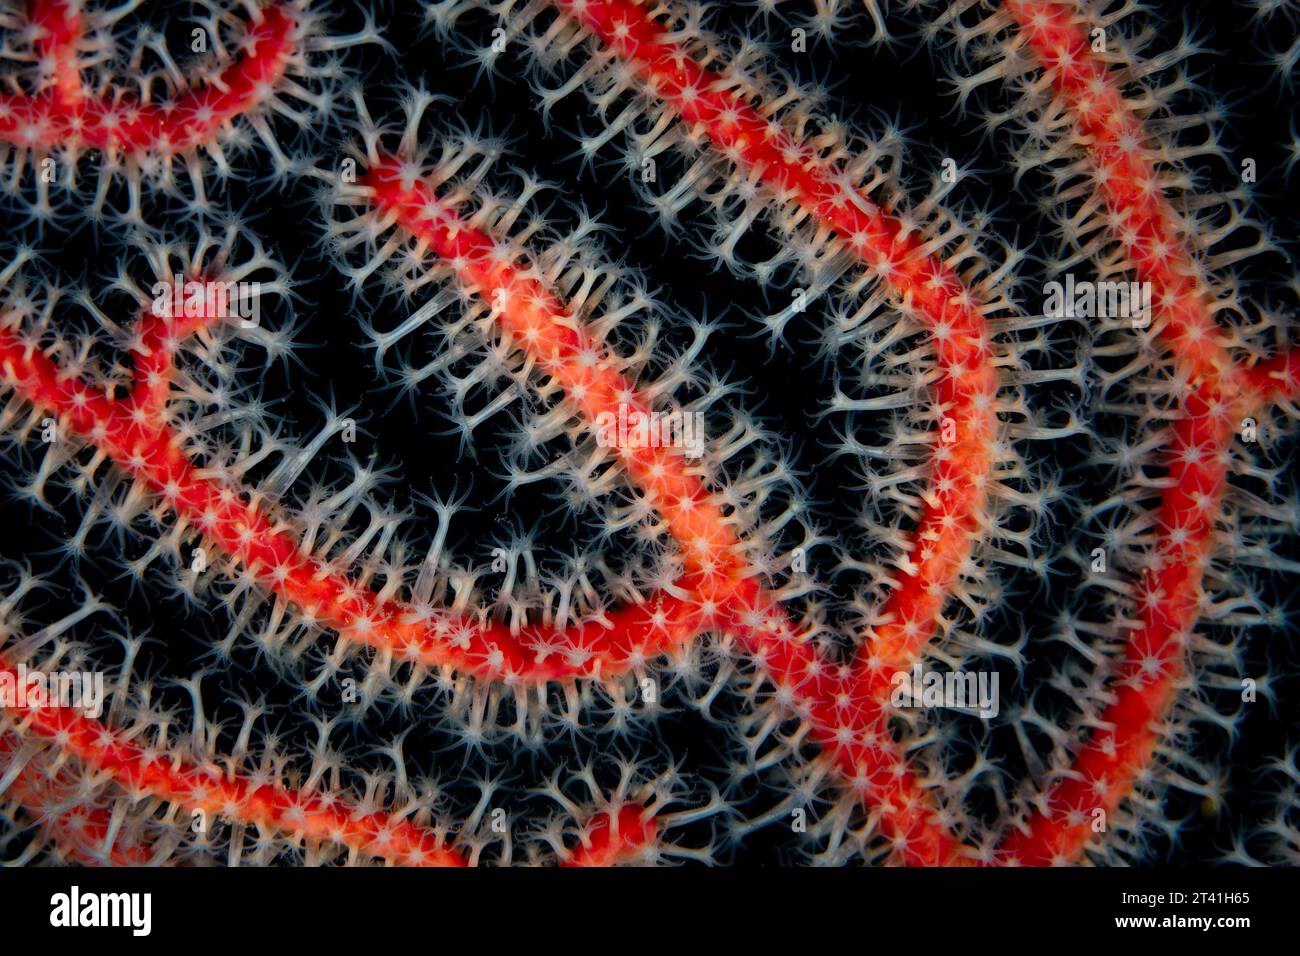 Dettaglio dei polipi che crescono in una gorgonia a Raja Ampat, Indonesia. Le barriere coralline di questa regione sostengono la più grande biodiversità marina della Terra. Foto Stock